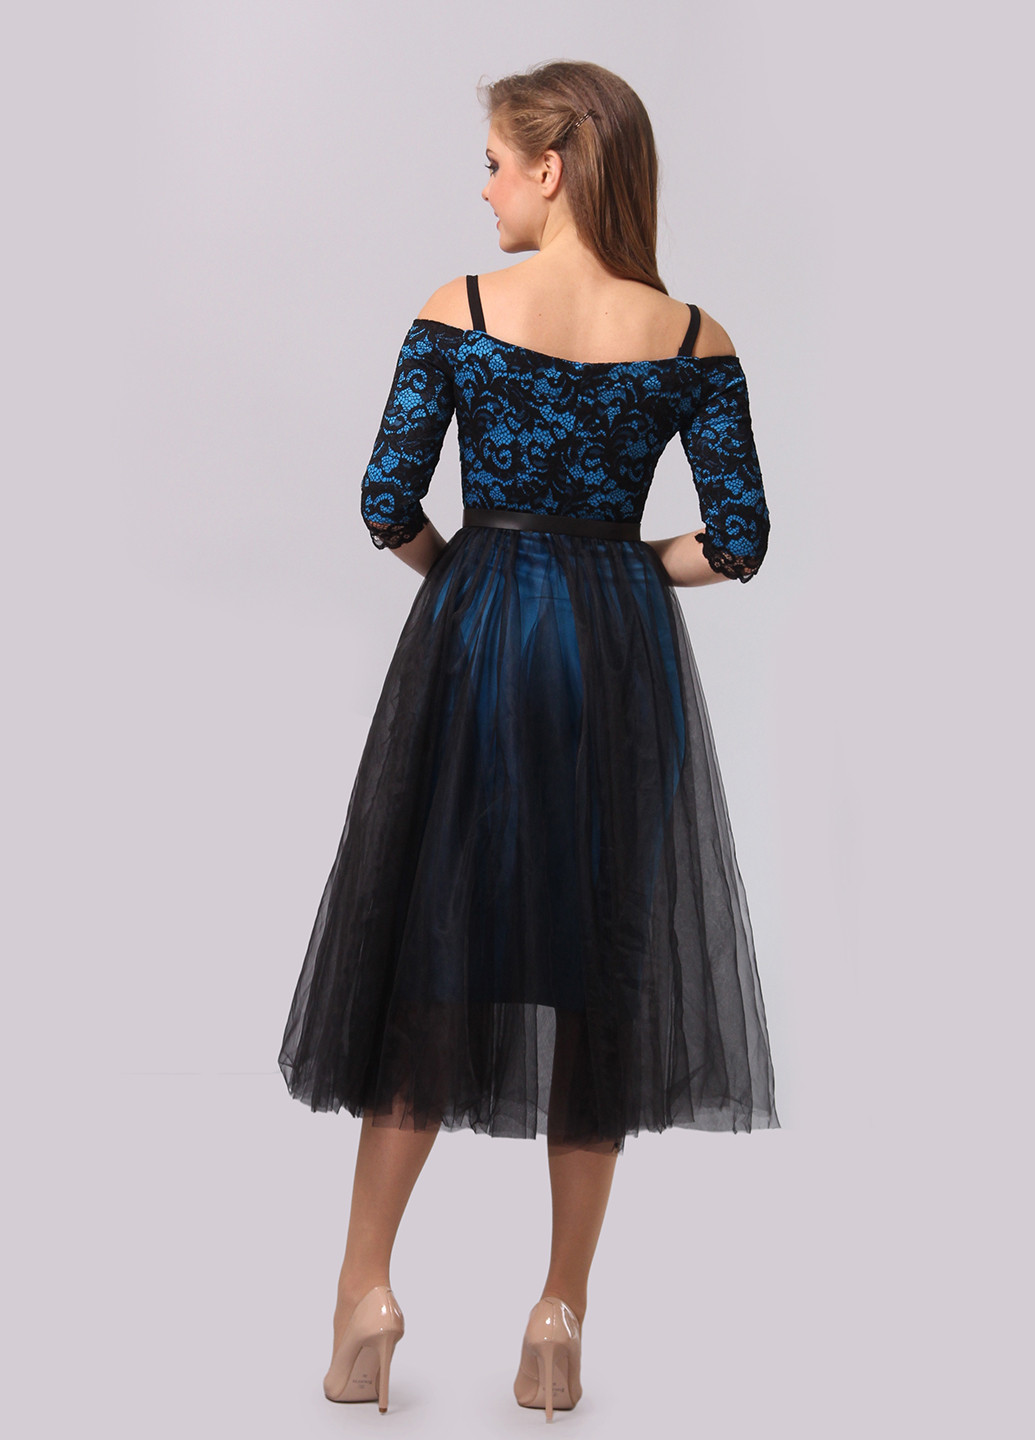 Темно-синее вечернее платье с открытой спиной Agata Webers